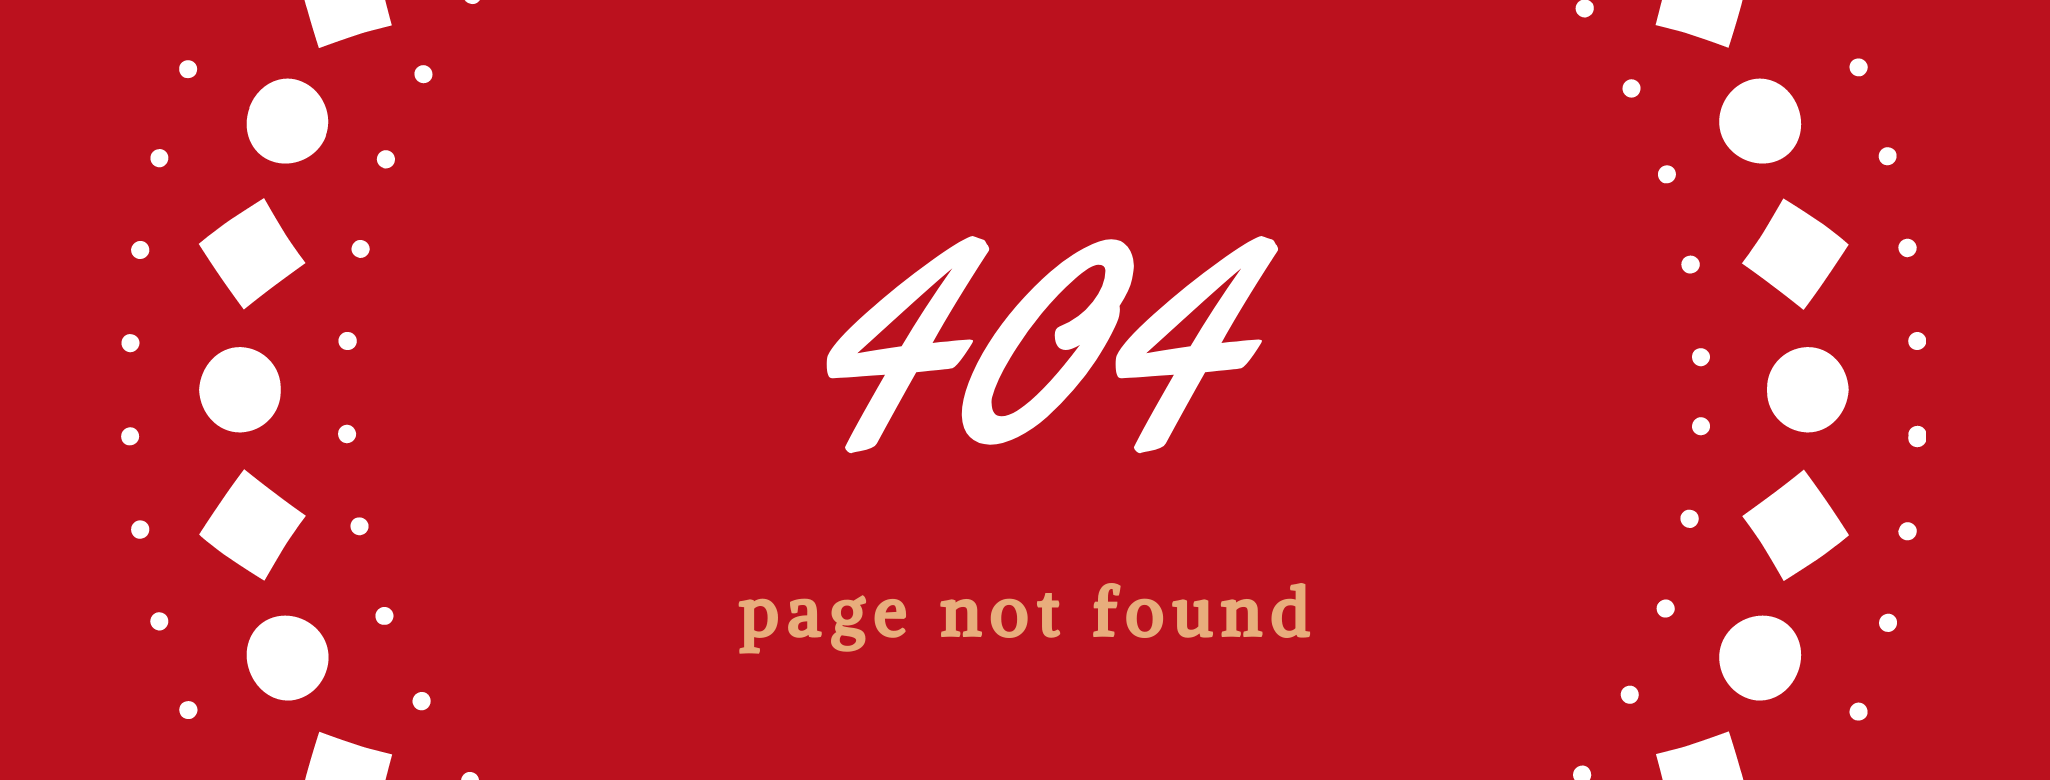 Stránka 4040